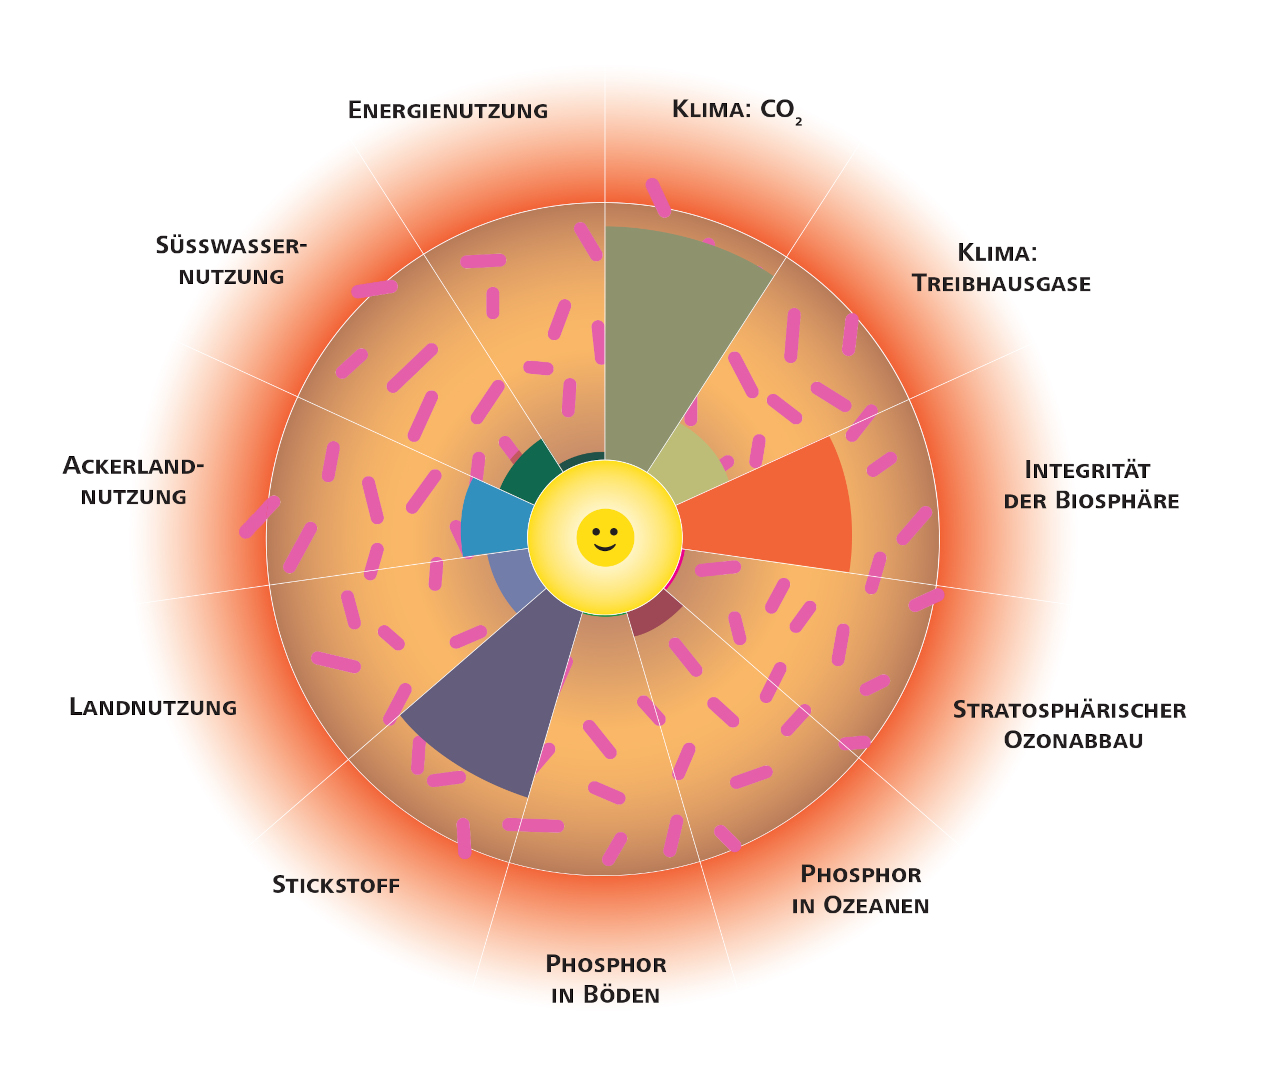 So sieht ein ökologischer Donut aus: Der gelbe Kreis in der Mitte kennzeichnet einen angemessenen Lebensstandard für alle Menschen. Der rote Bereich ausserhalb des Donuts ist die sogenannte Risikozone, in der irreversible Umweltschäden wahrscheinlich sind. 